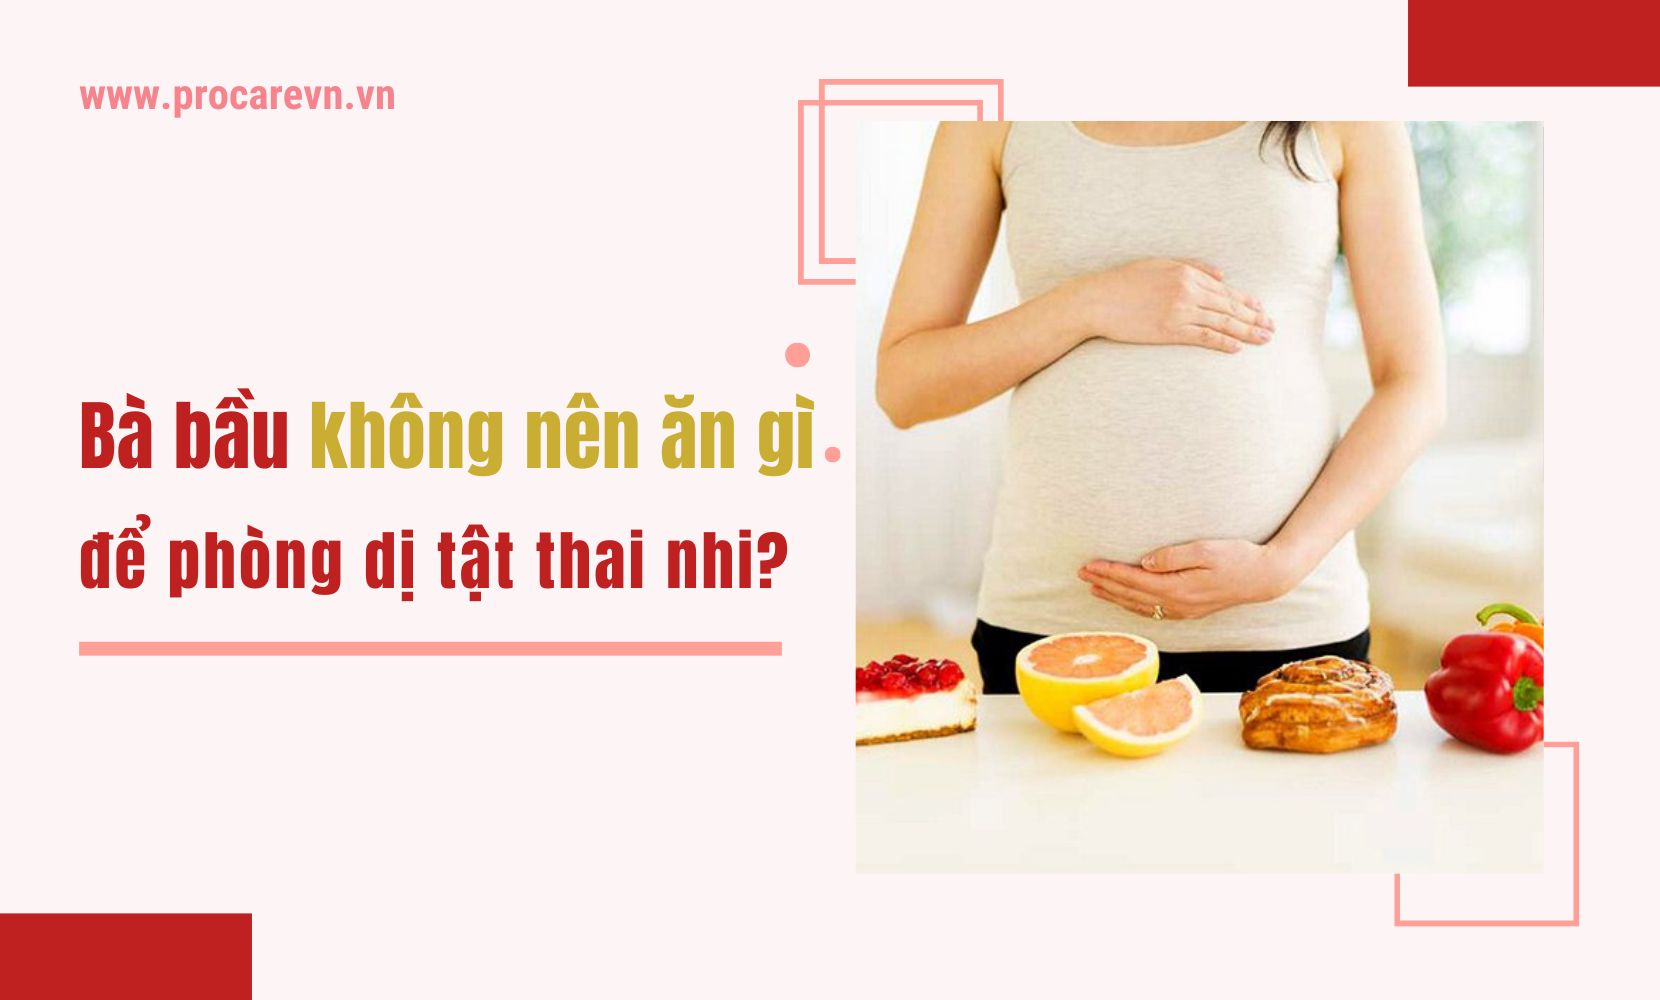 Sống khỏe 3 tháng đầu ăn gì để an thai Tips ẩm thực vô cùng hữu ích cho bà bầu